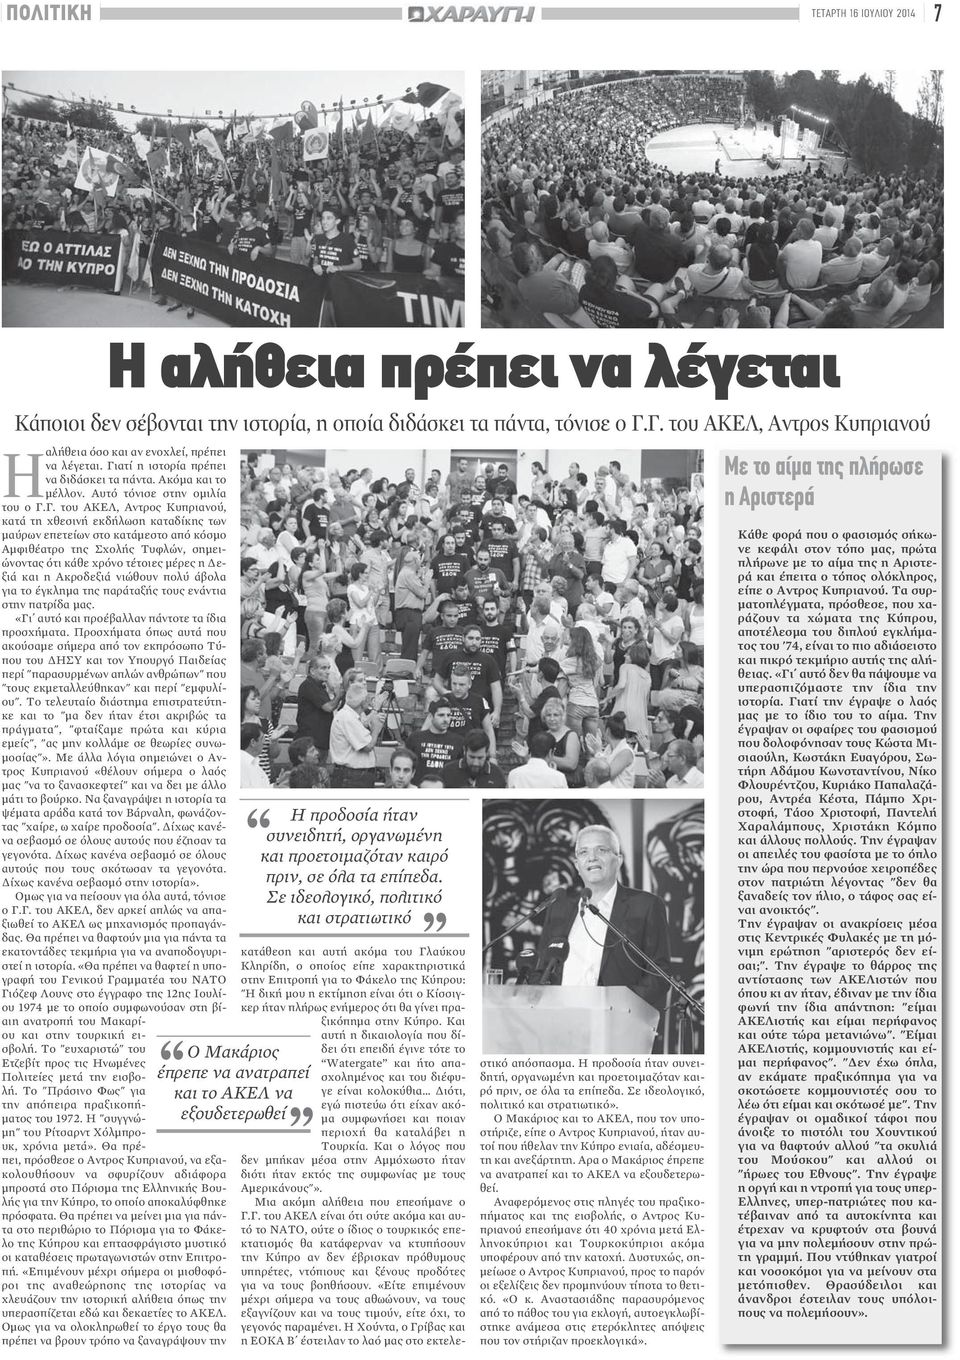 Κυπριανού, κατά τη χθεσινή εκδήλωση καταδίκης των μαύρων επετείων στο κατάμεστο από κόσμο Αμφιθέατρο της Σχολής Τυφλών, σημειώνοντας ότι κάθε χρόνο τέτοιες μέρες η Δεξιά και η Ακροδεξιά νιώθουν πολύ